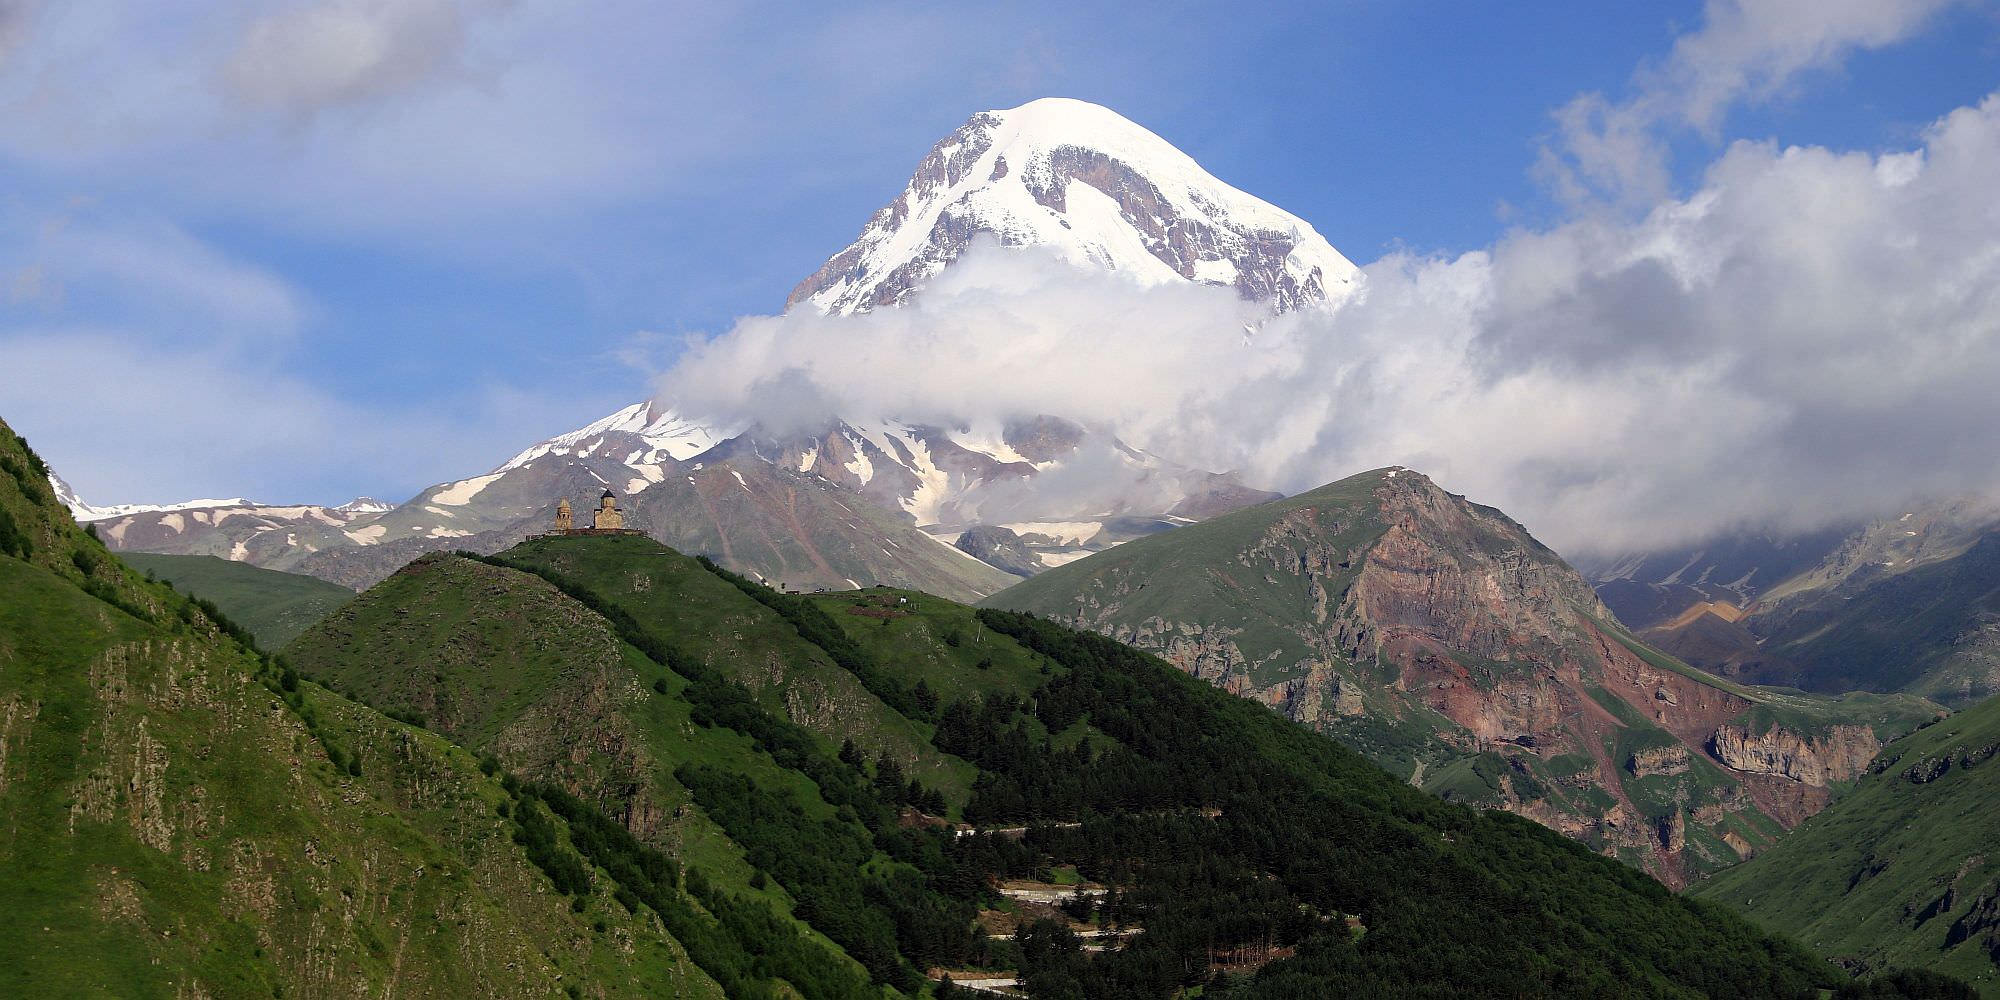 Mt. Kazbek